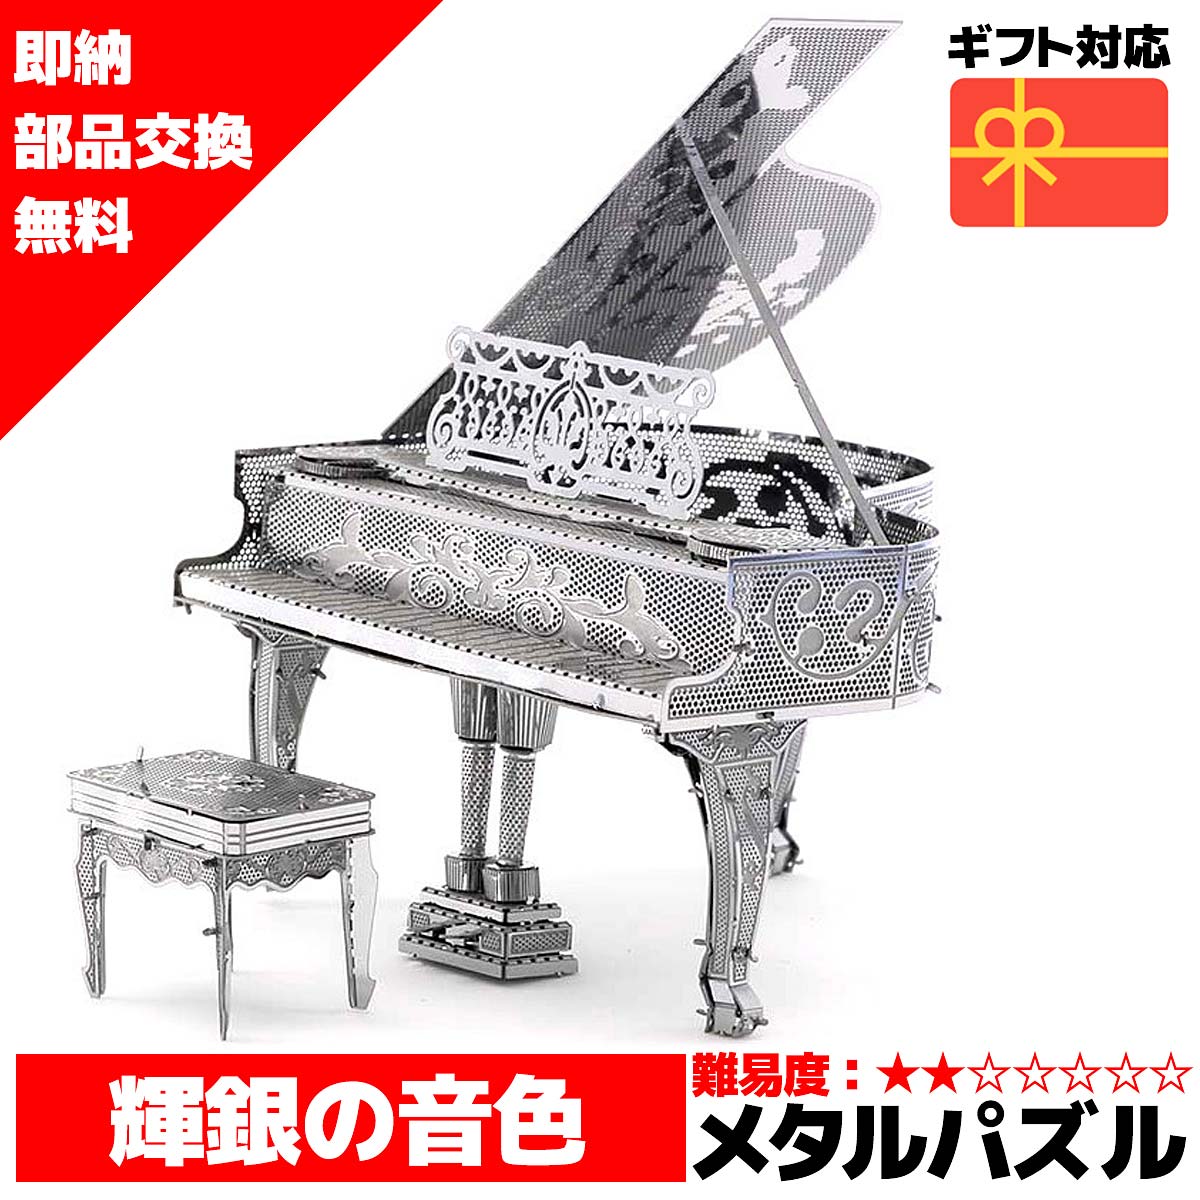 メタルパズル 3Dメタルパズル グランドピアノ シルバー 送料無料 ラッピング約 1000円ポッキリ